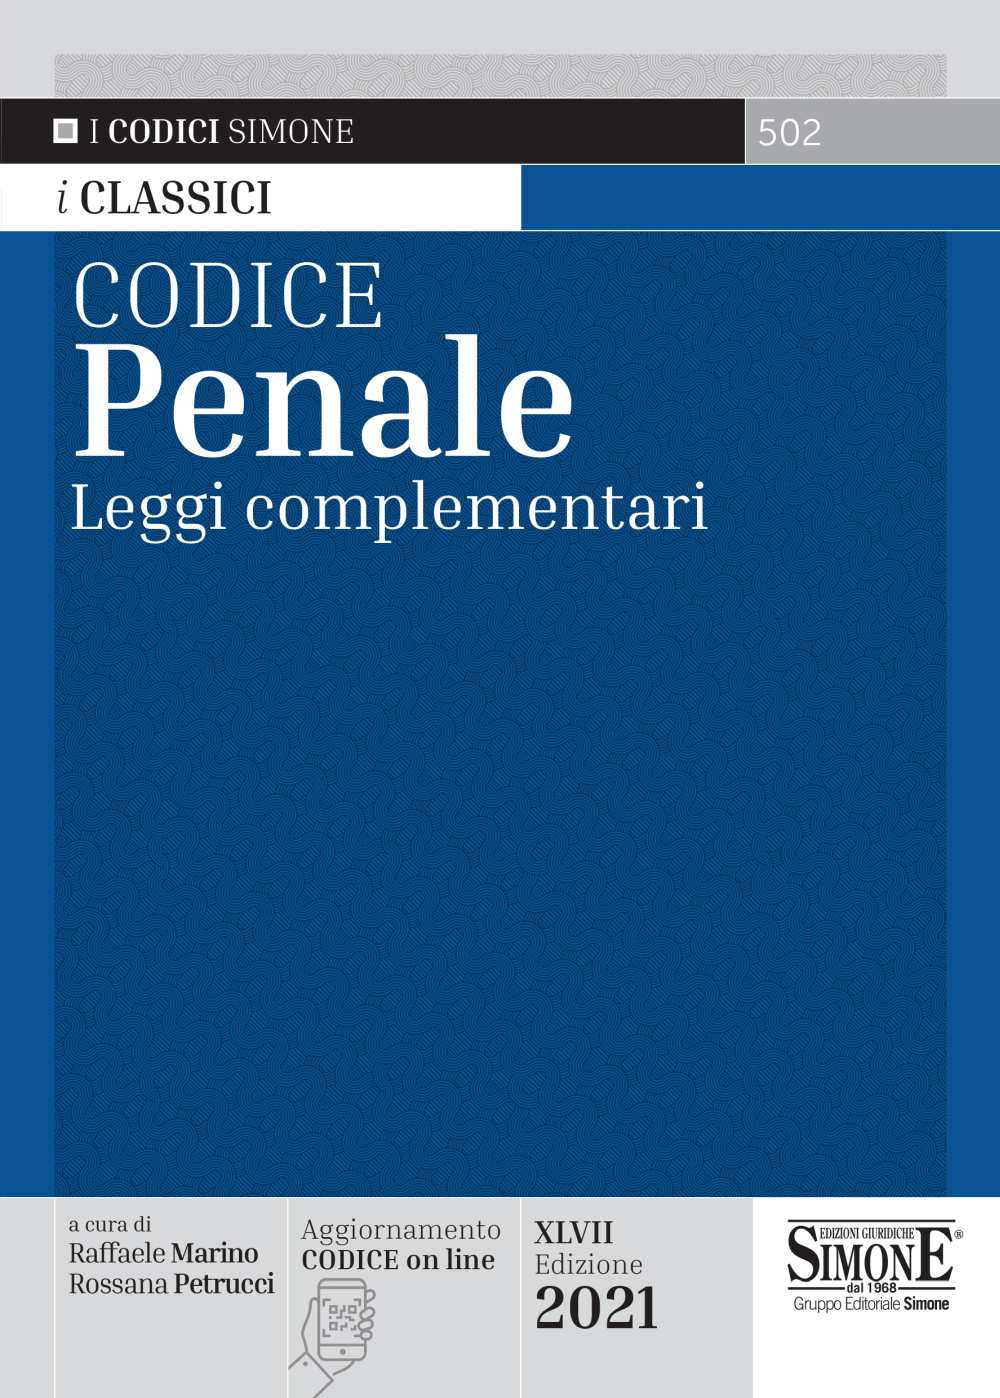 Codice Penale